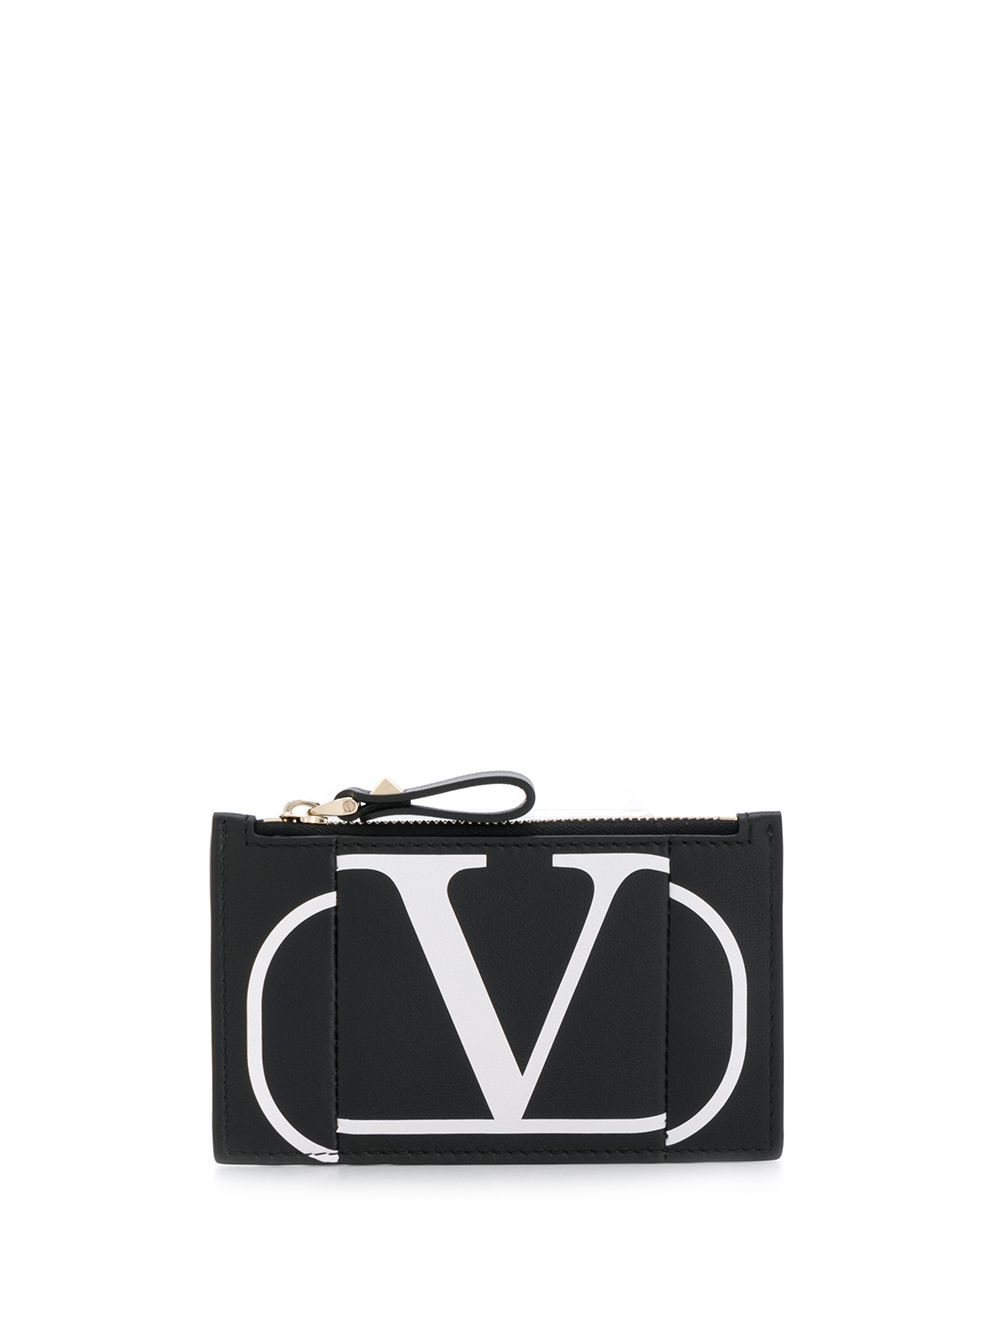 фото Valentino кошелек valentino garavani с логотипом vlogo